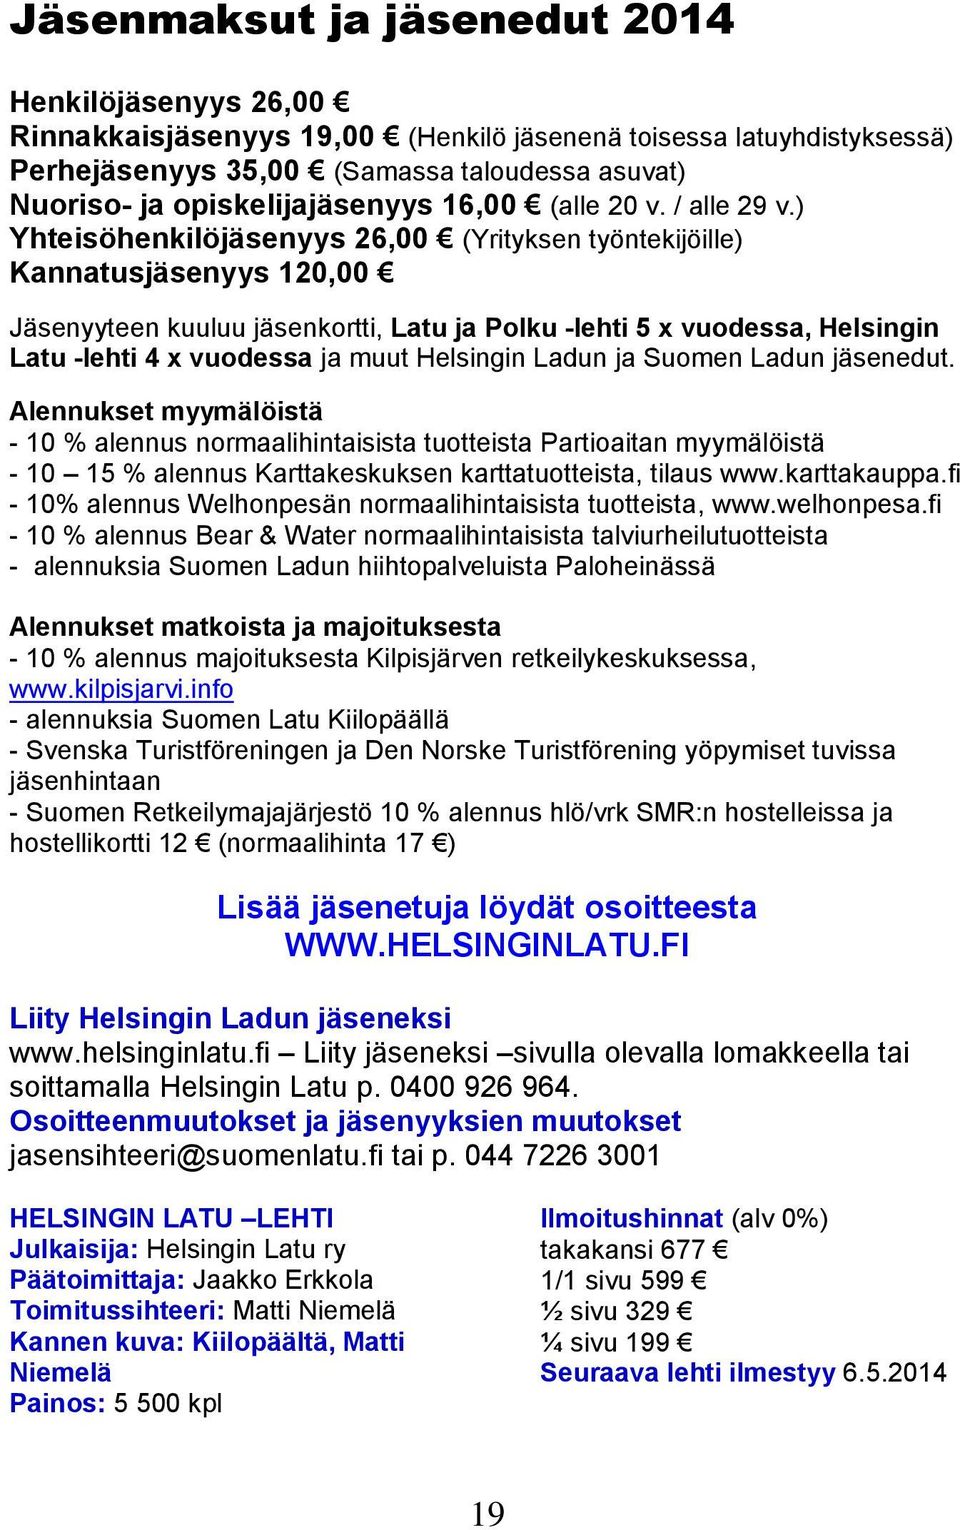 ) Yhteisöhenkilöjäsenyys 26,00 (Yrityksen työntekijöille) Kannatusjäsenyys 120,00 Jäsenyyteen kuuluu jäsenkortti, Latu ja Polku -lehti 5 x vuodessa, Helsingin Latu -lehti 4 x vuodessa ja muut